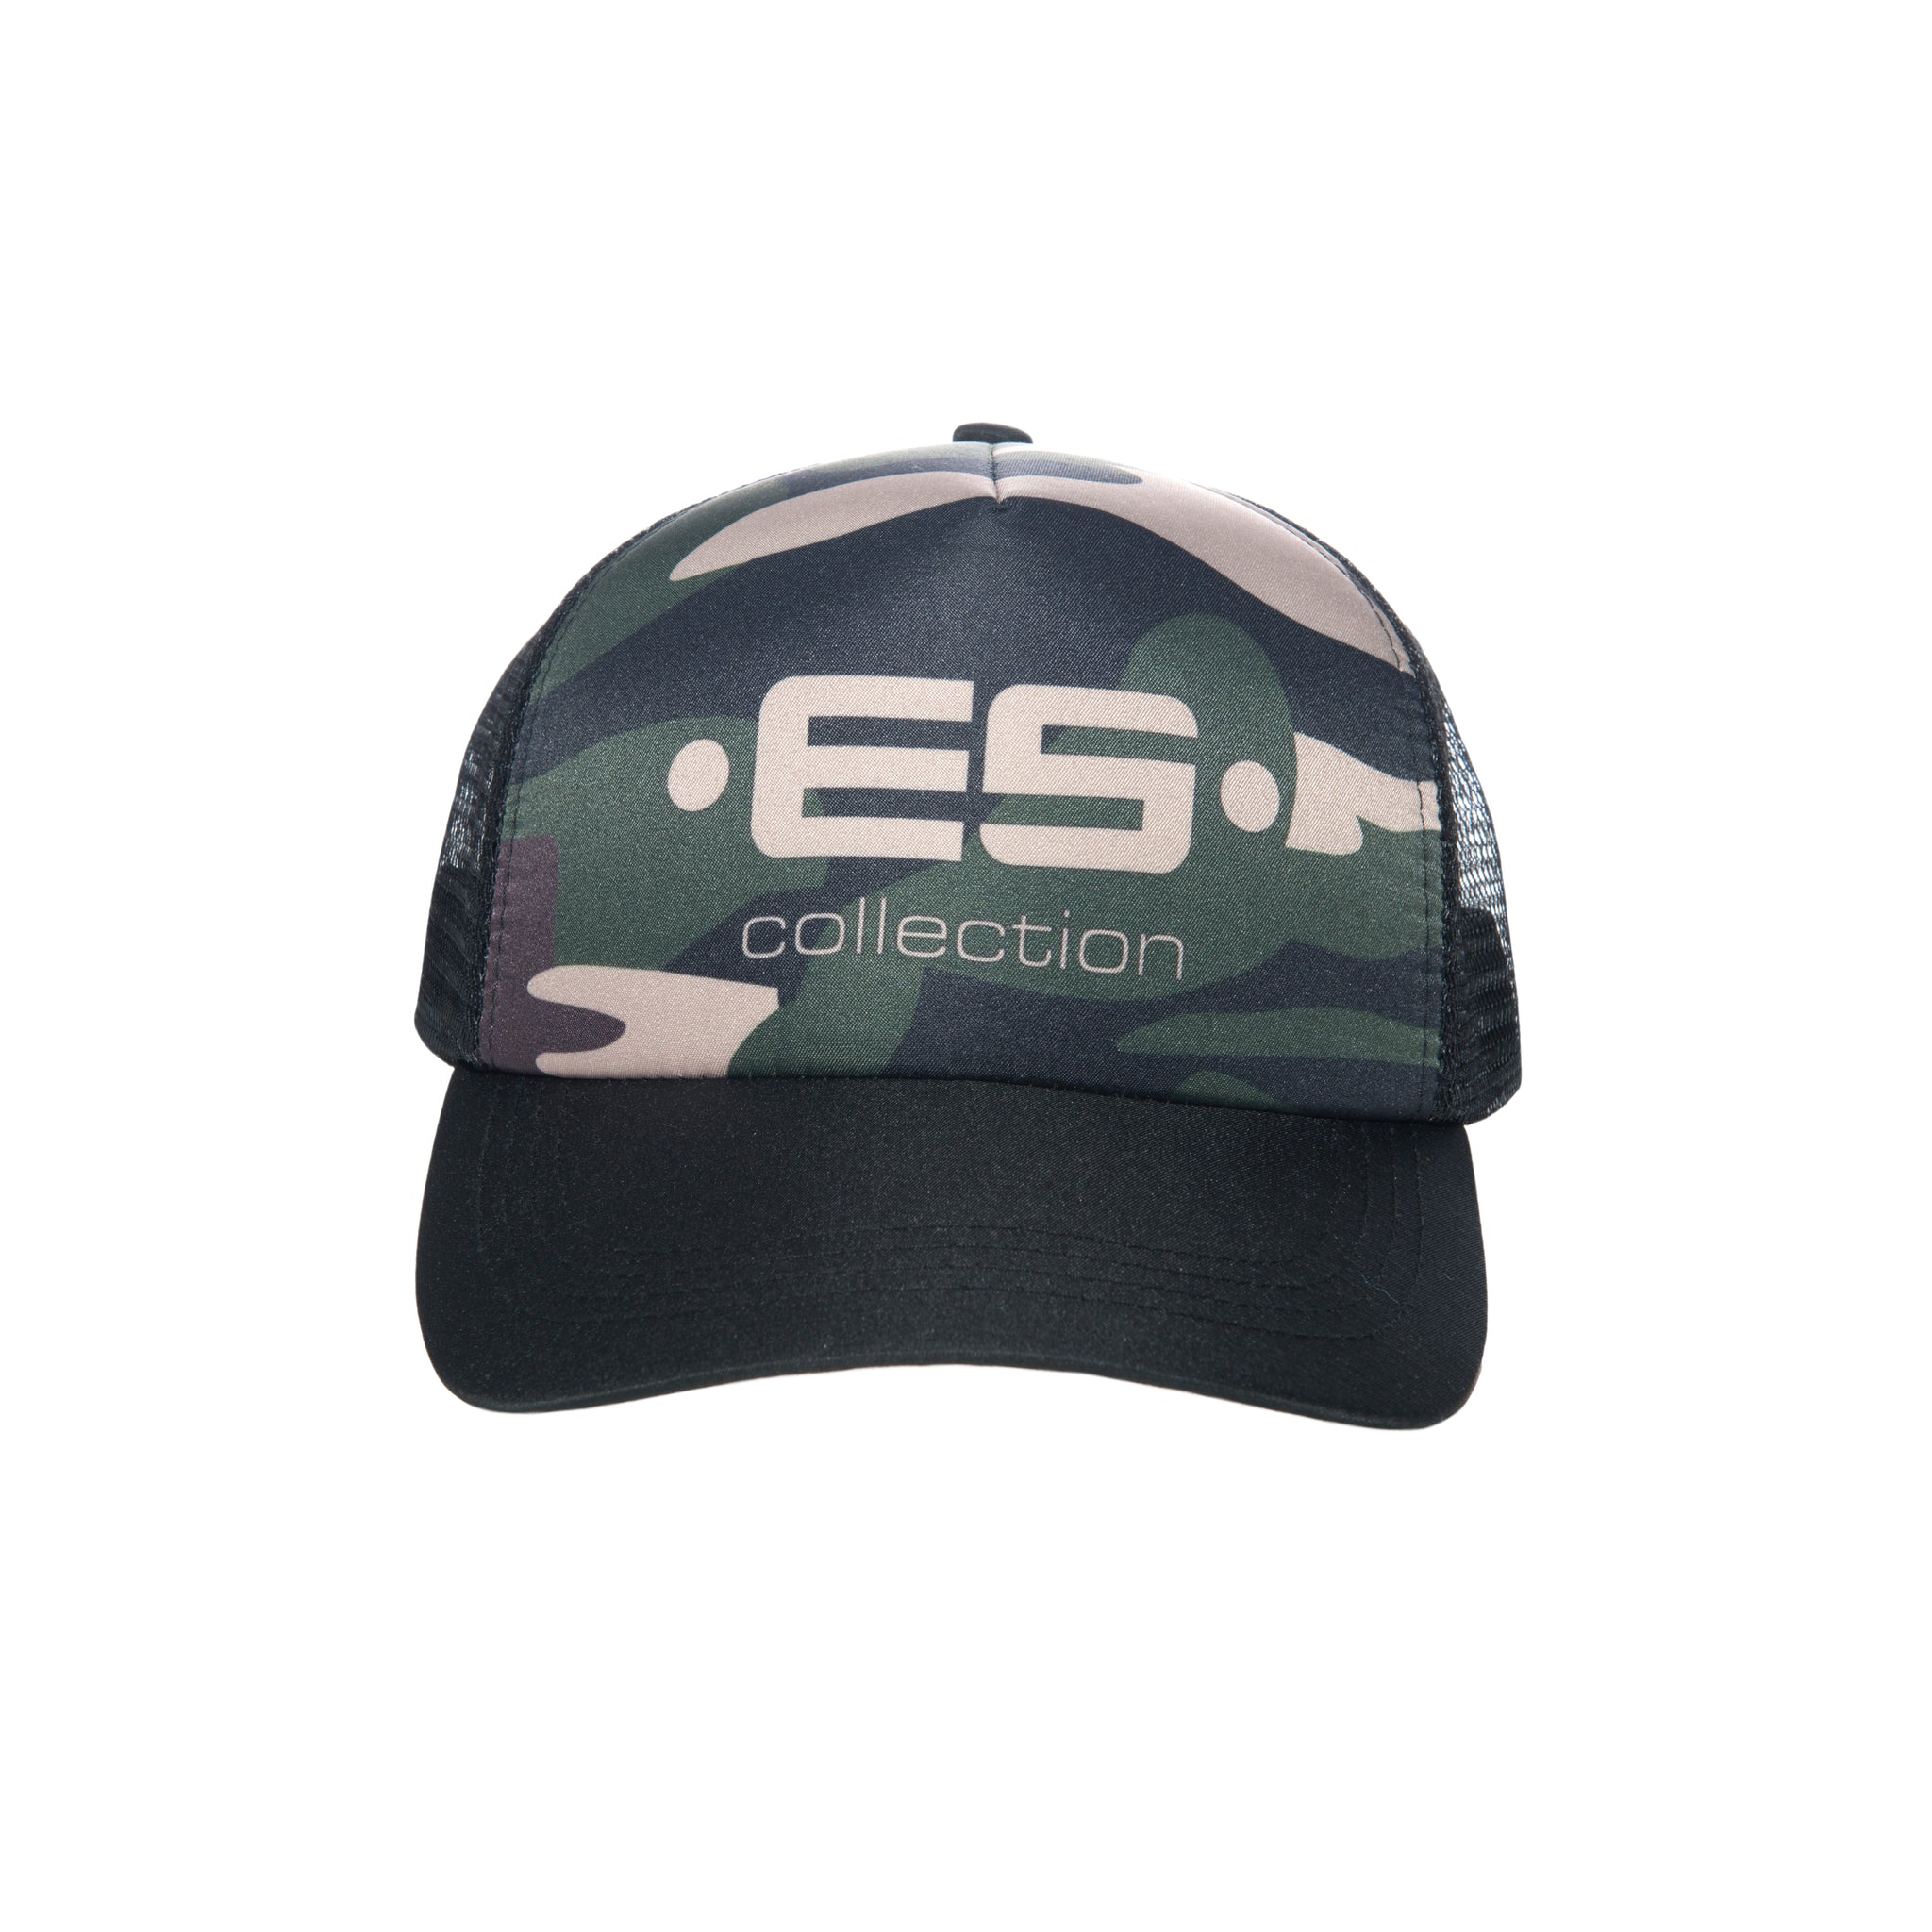 ES Collection Print Logo Baseball Cap Camouflage CAP003